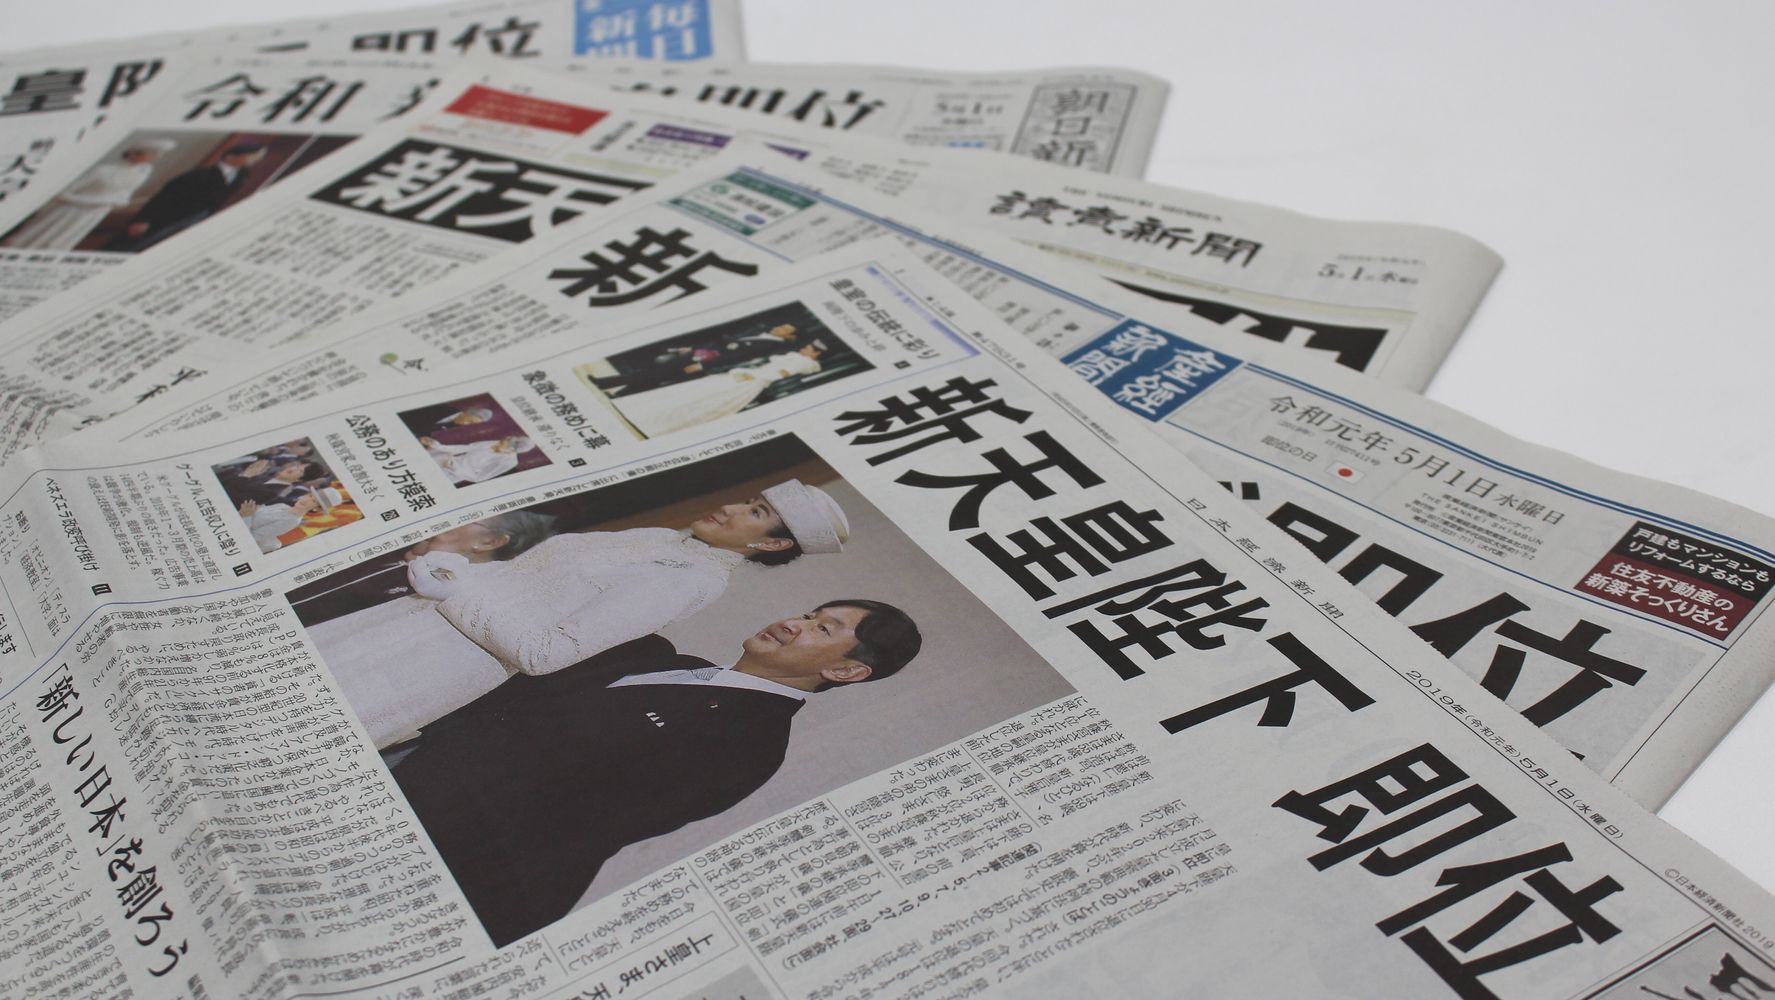 新天皇陛下即位 令和元年5月1日日本経済新聞朝刊 | www.esn-ub.org